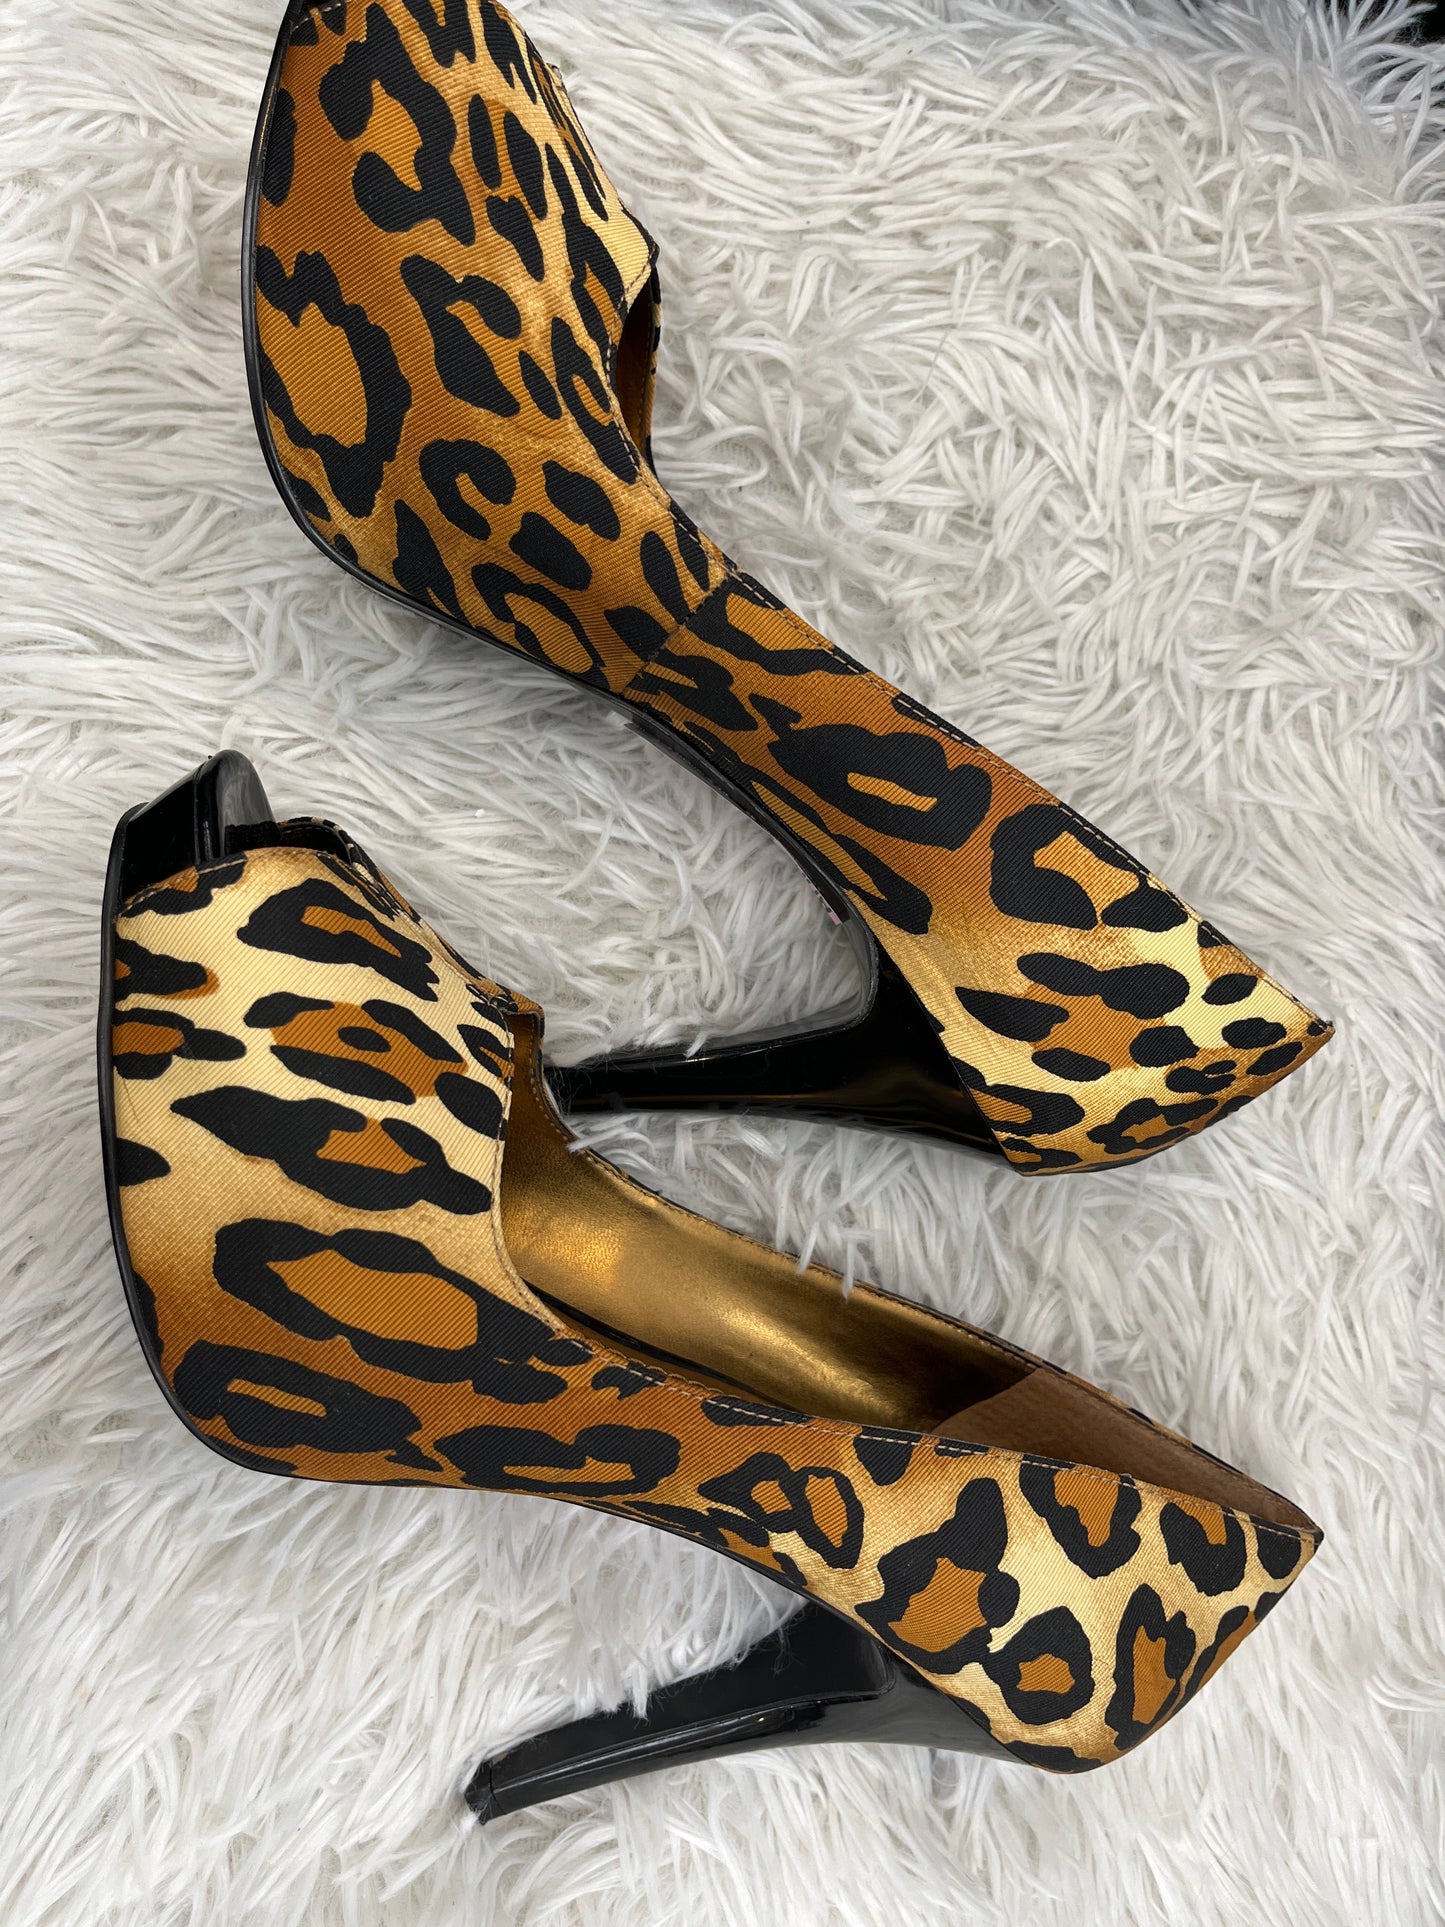 Leopard Print Shoes Heels Stiletto Nine West, Size 9